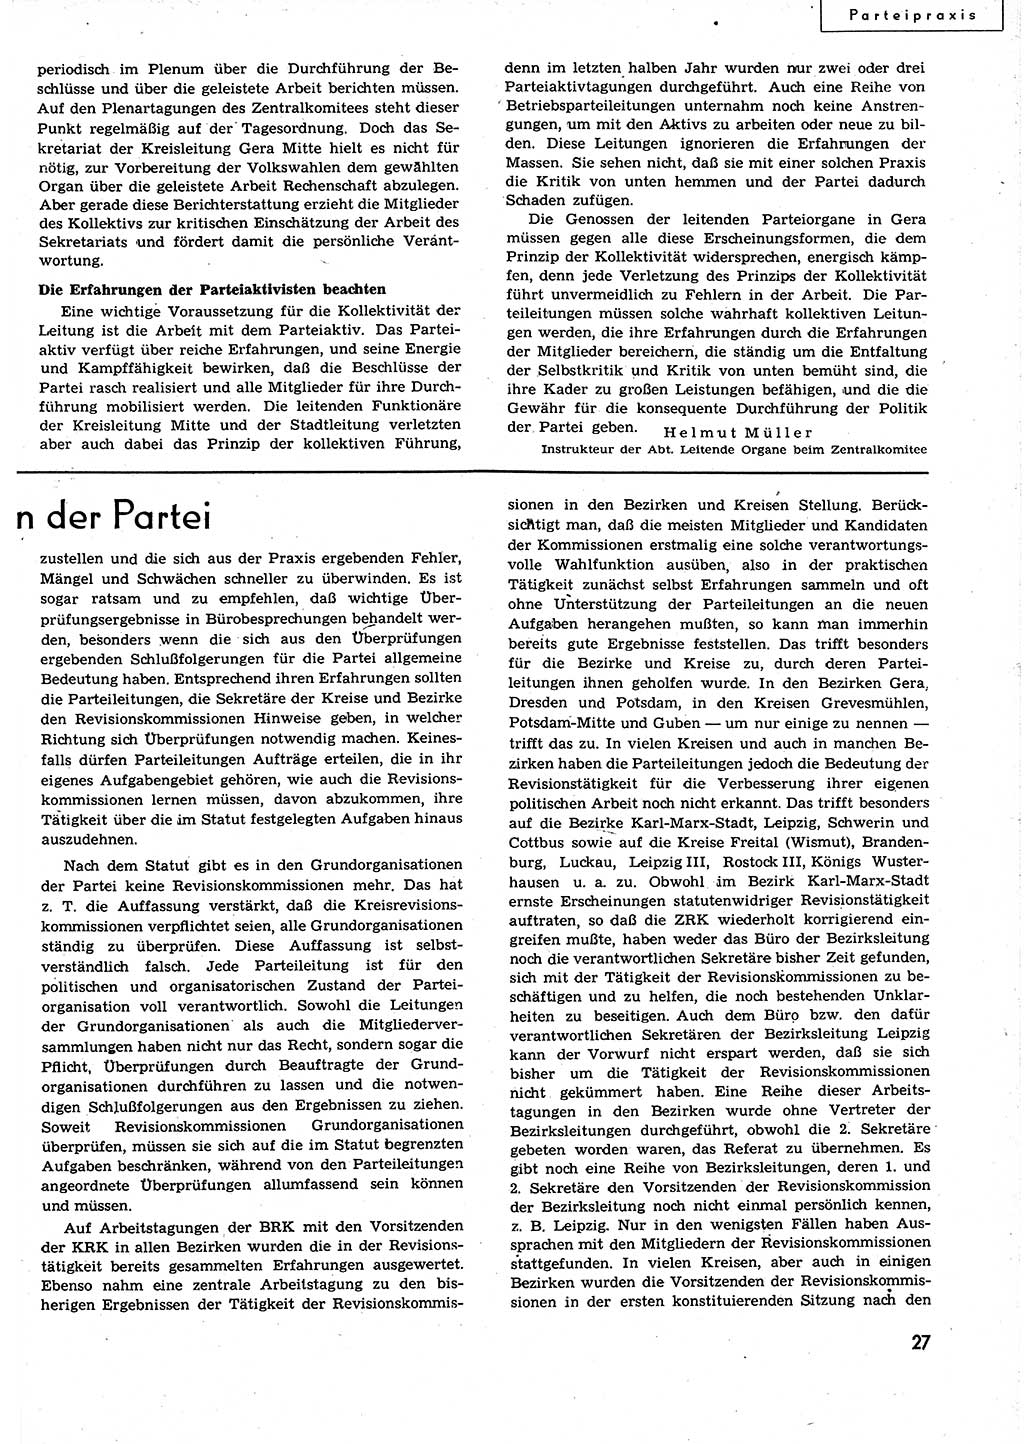 Neuer Weg (NW), Organ des Zentralkomitees (ZK) der SED (Sozialistische Einheitspartei Deutschlands) für alle Parteiarbeiter, 9. Jahrgang [Deutsche Demokratische Republik (DDR)] 1954, Heft 19/27 (NW ZK SED DDR 1954, H. 19/27)